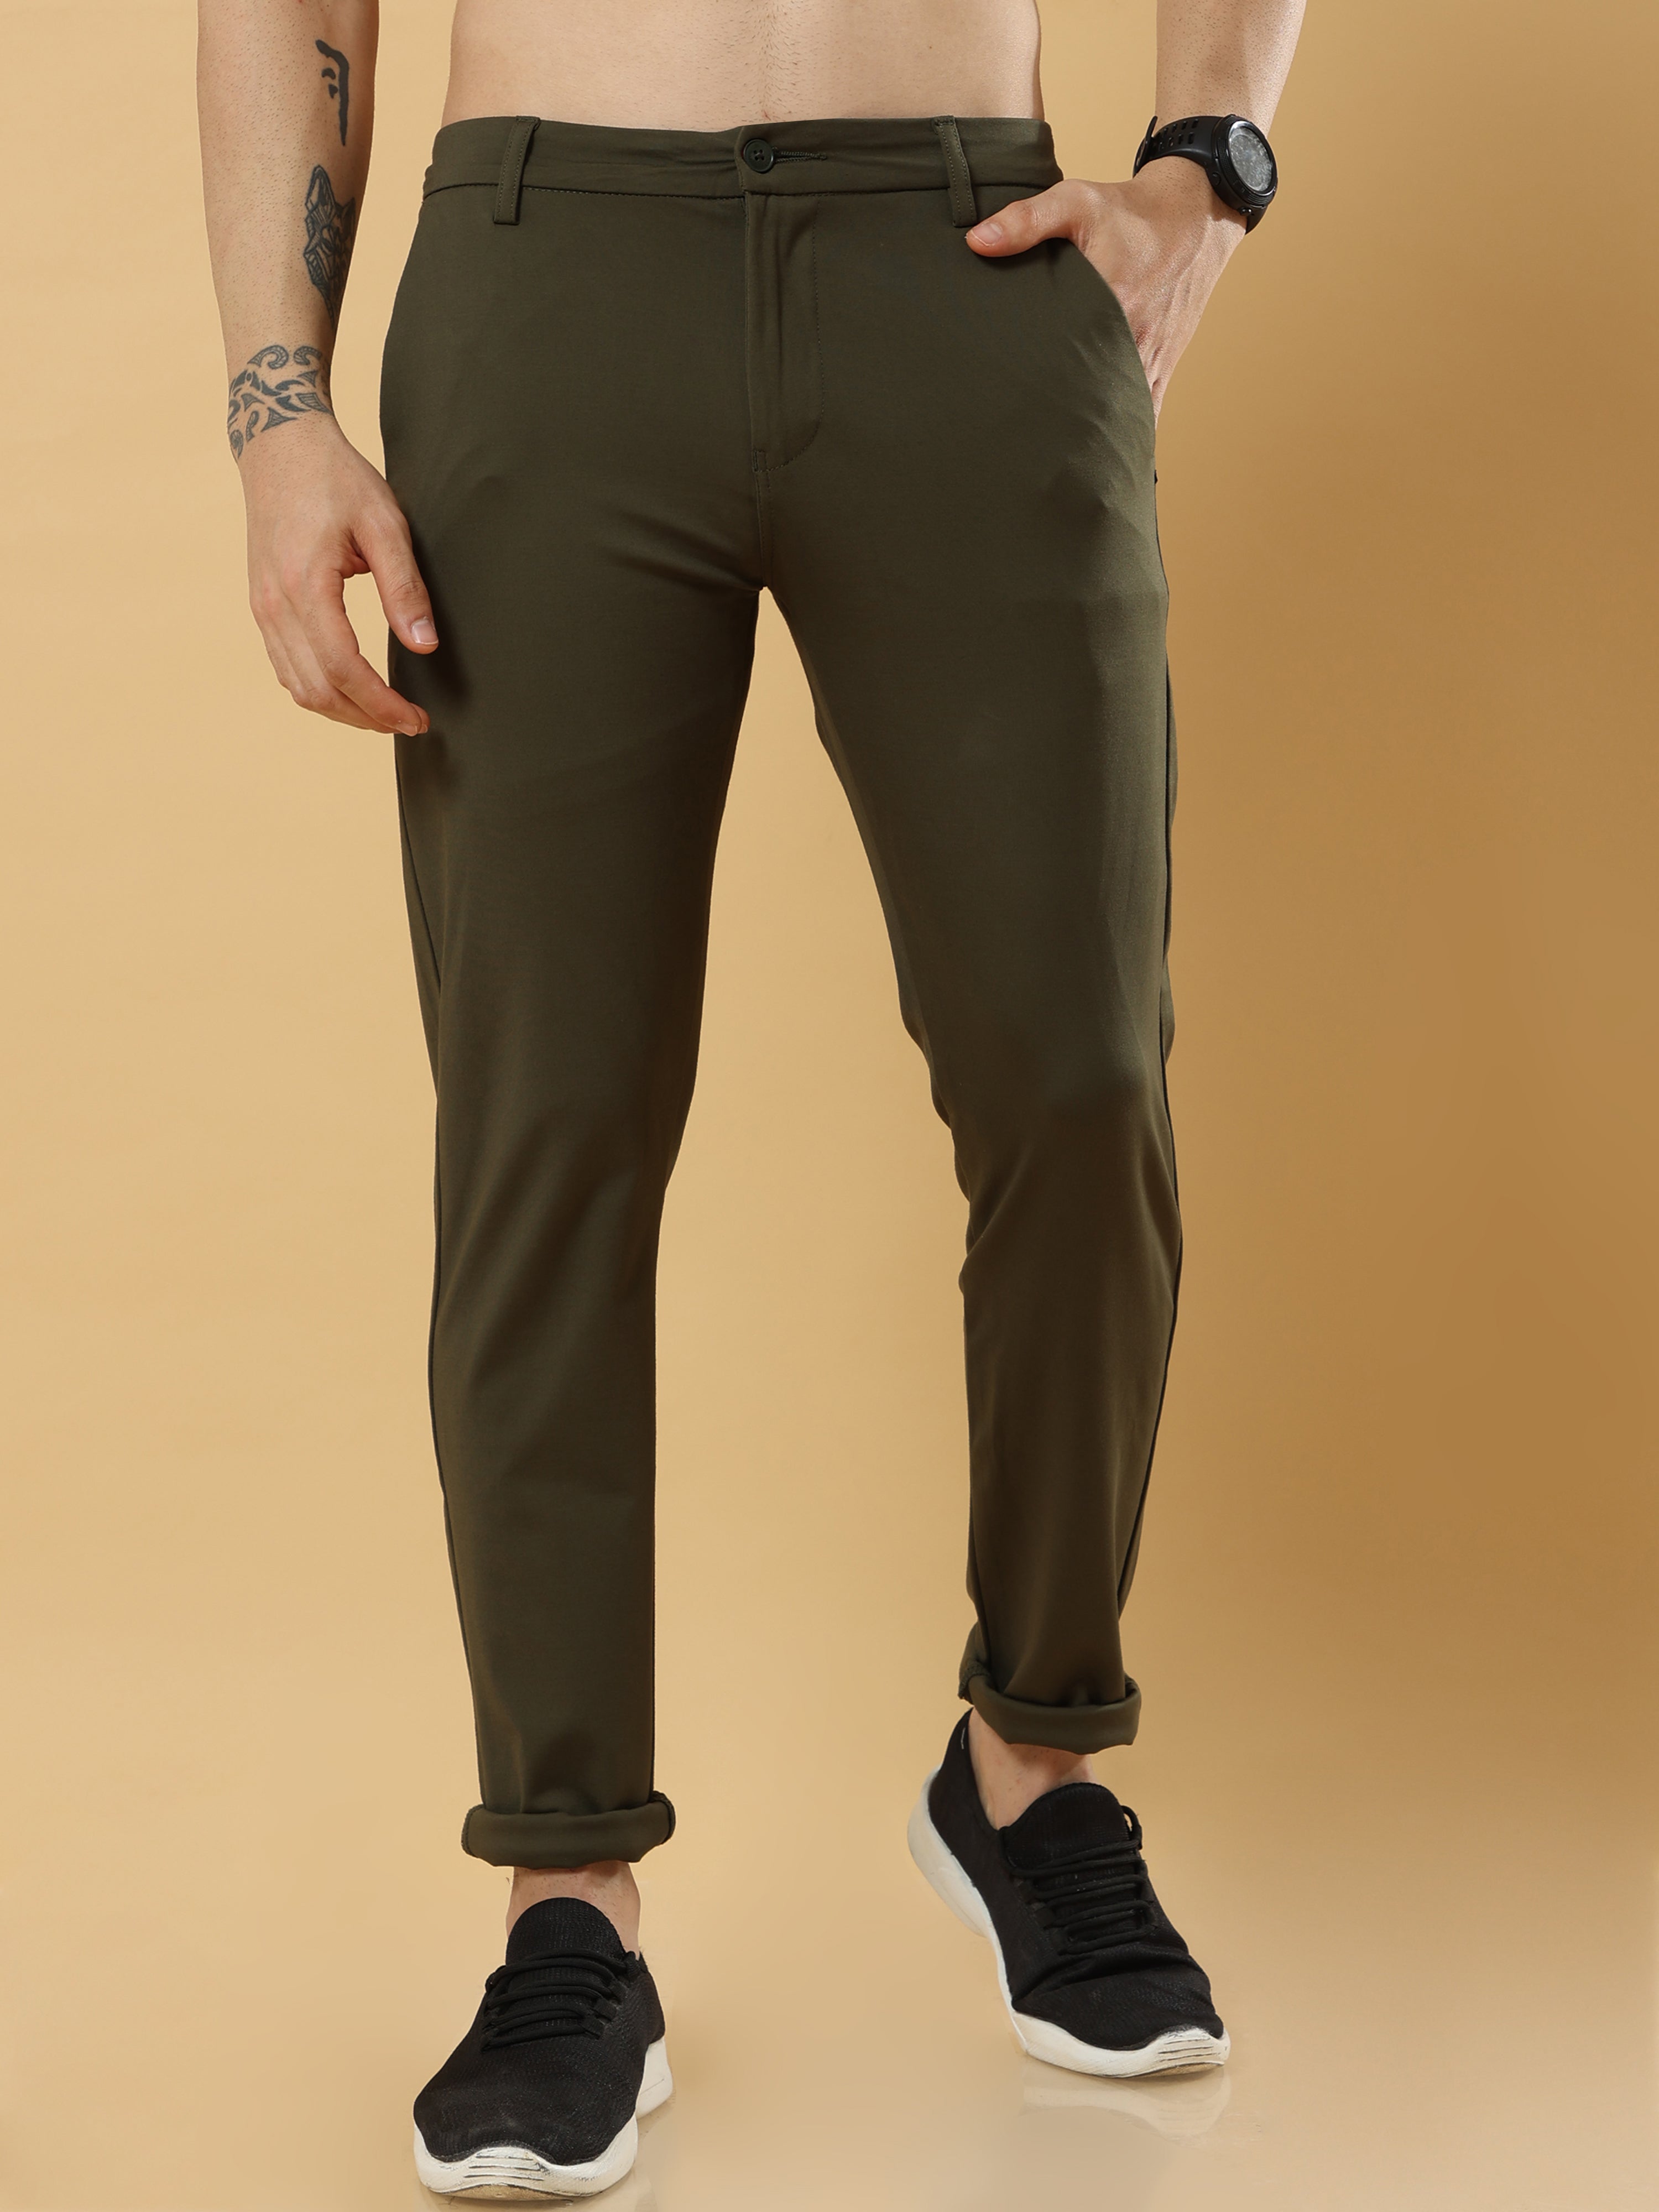 Fall Fashion: Stylish Olive Green Pants